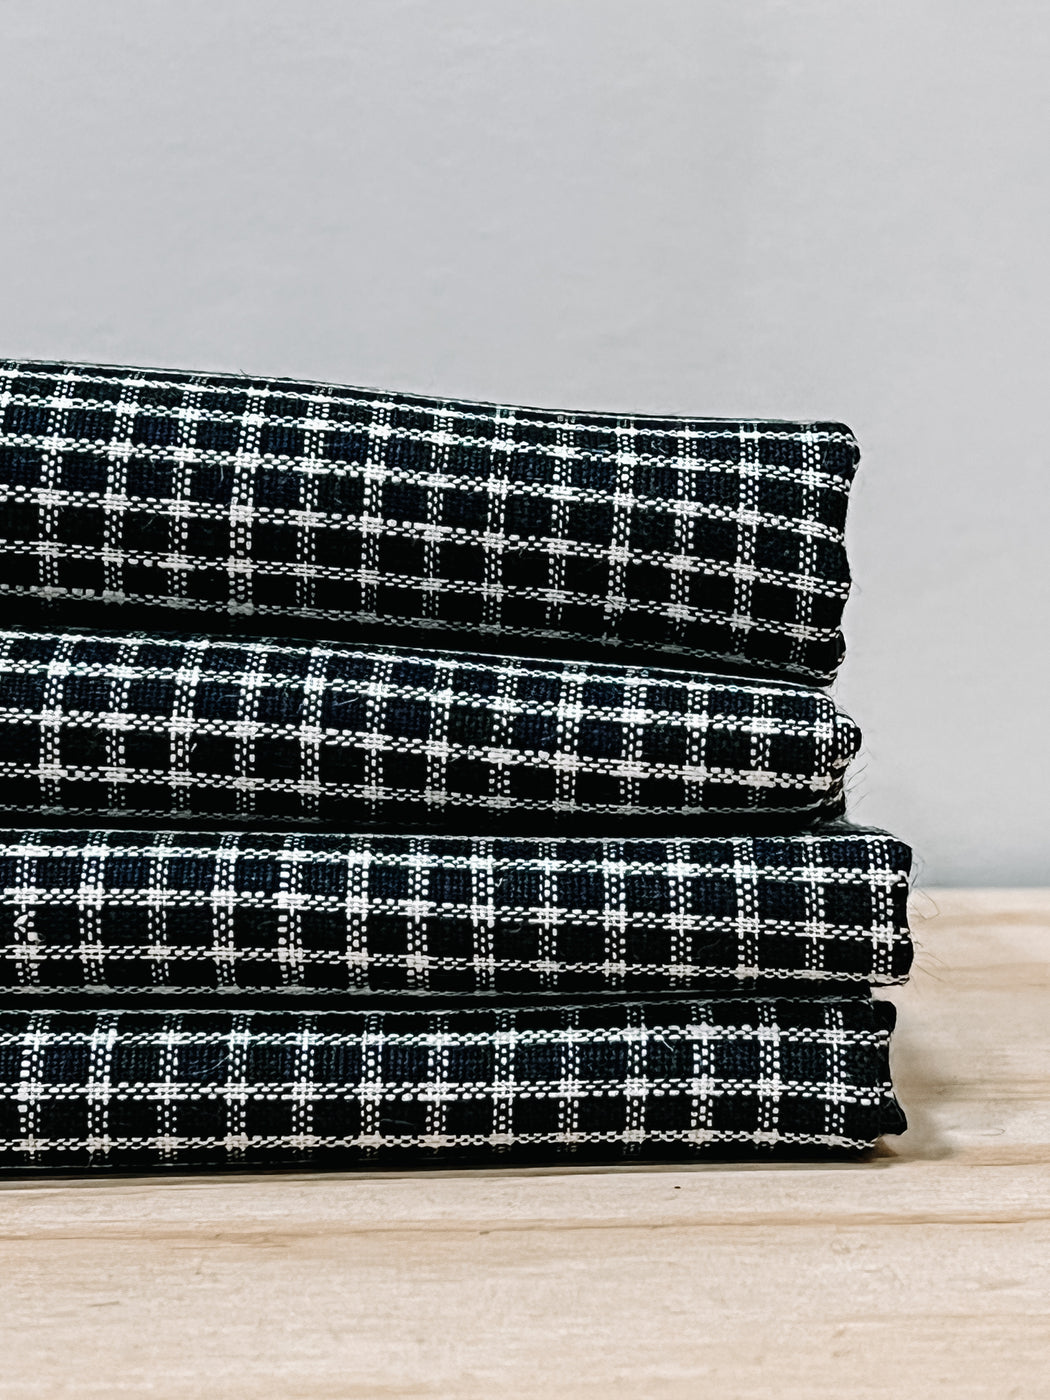 Fog Linen- Linen Tea towel Black and White Grid